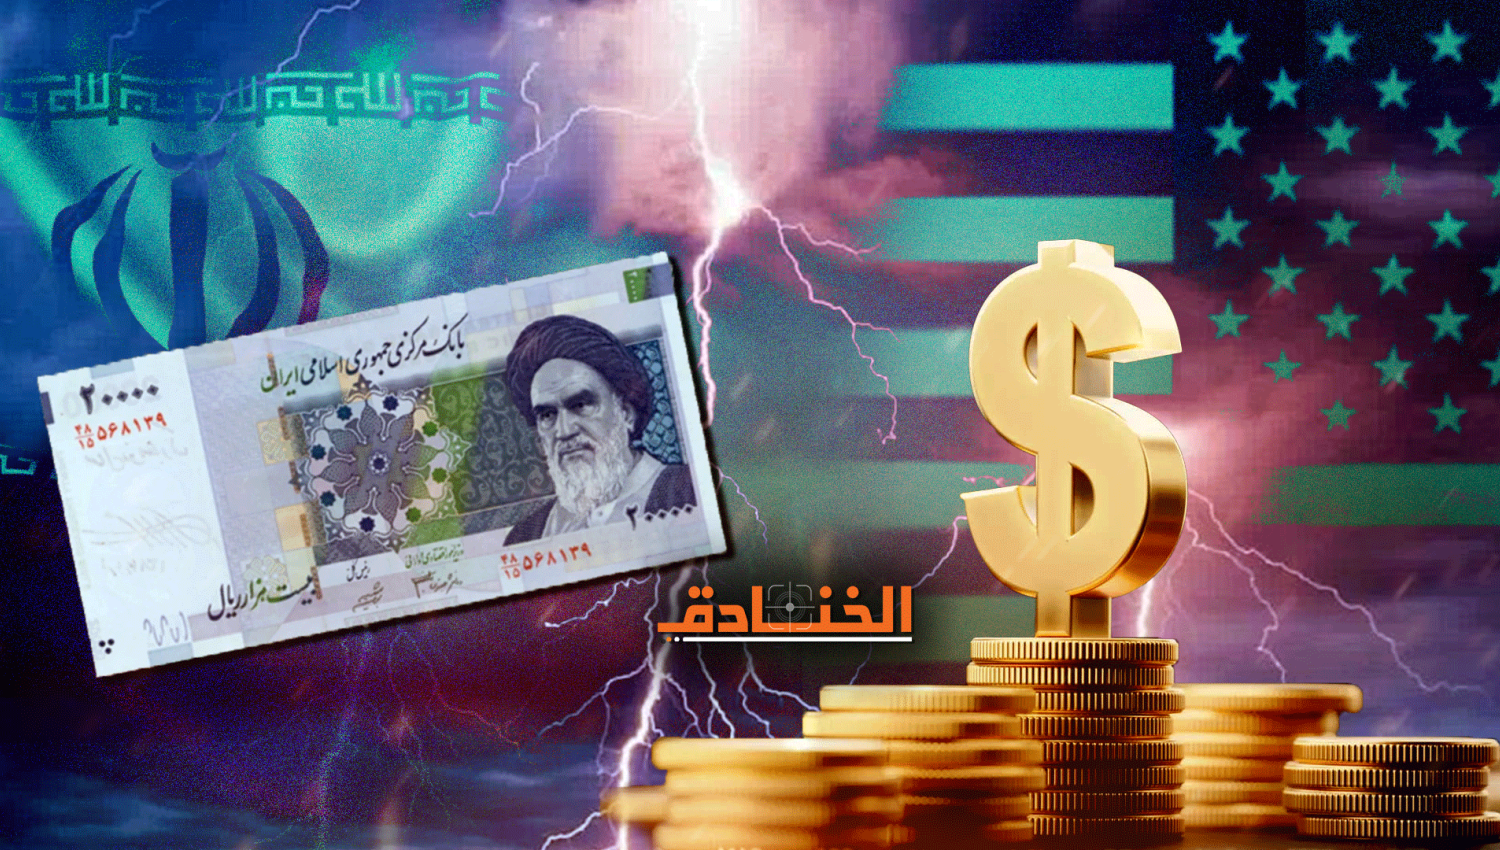 حرب العملة ضد إيران